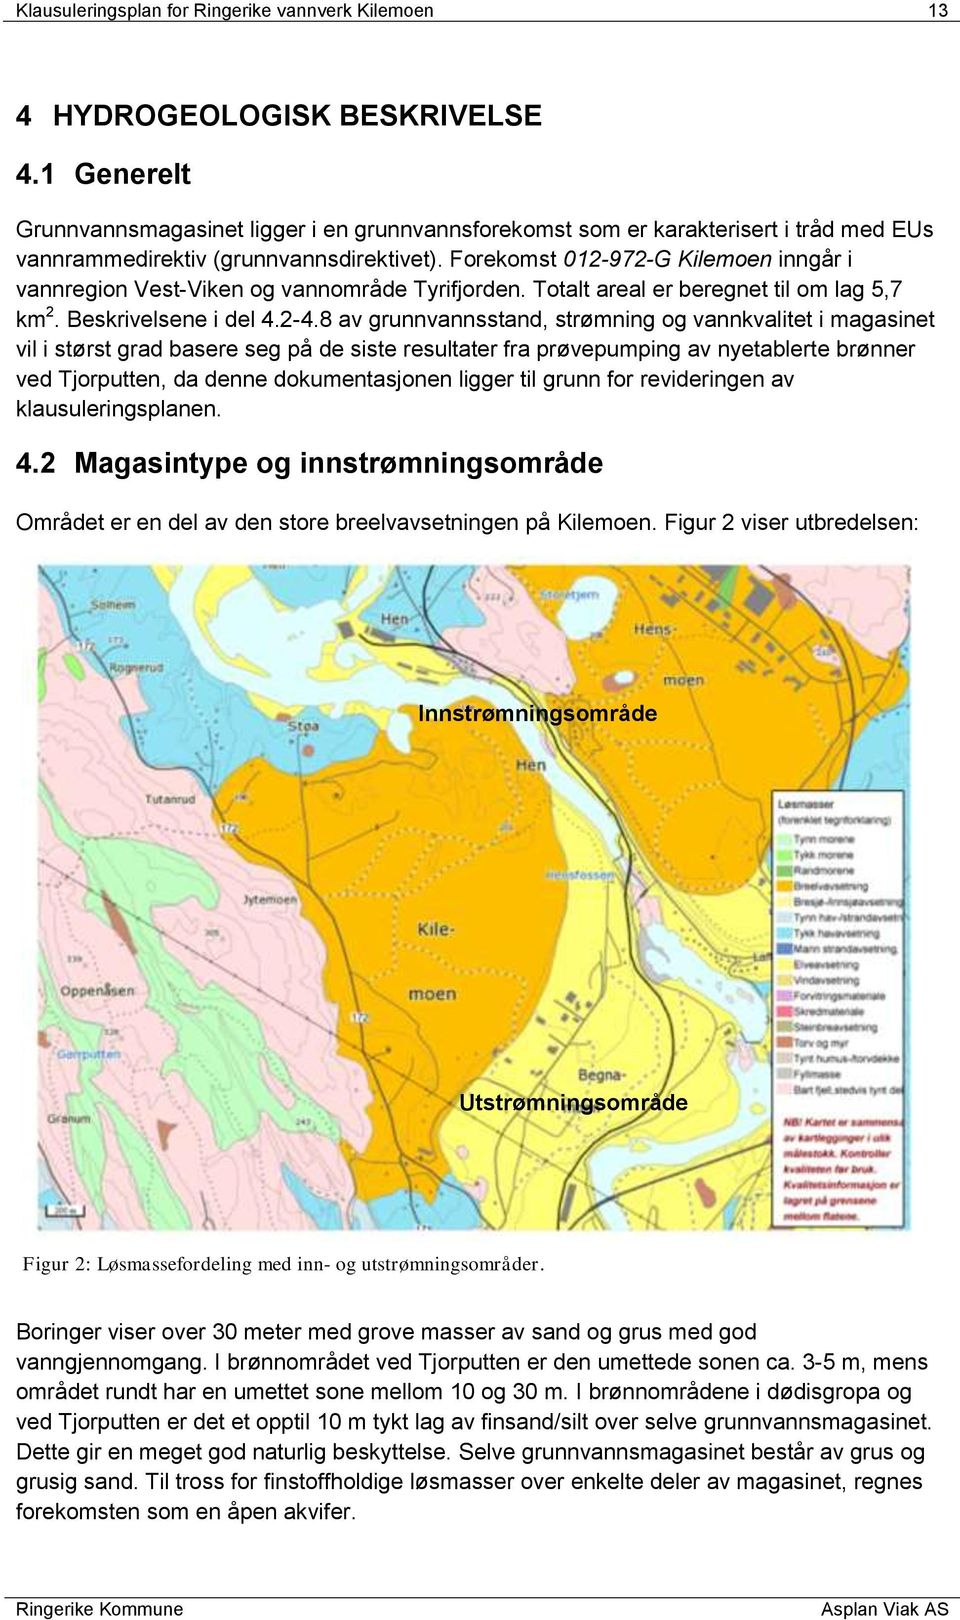 Forekomst 012-972-G Kilemoen inngår i vannregion Vest-Viken og vannområde Tyrifjorden. Totalt areal er beregnet til om lag 5,7 km 2. Beskrivelsene i del 4.2-4.